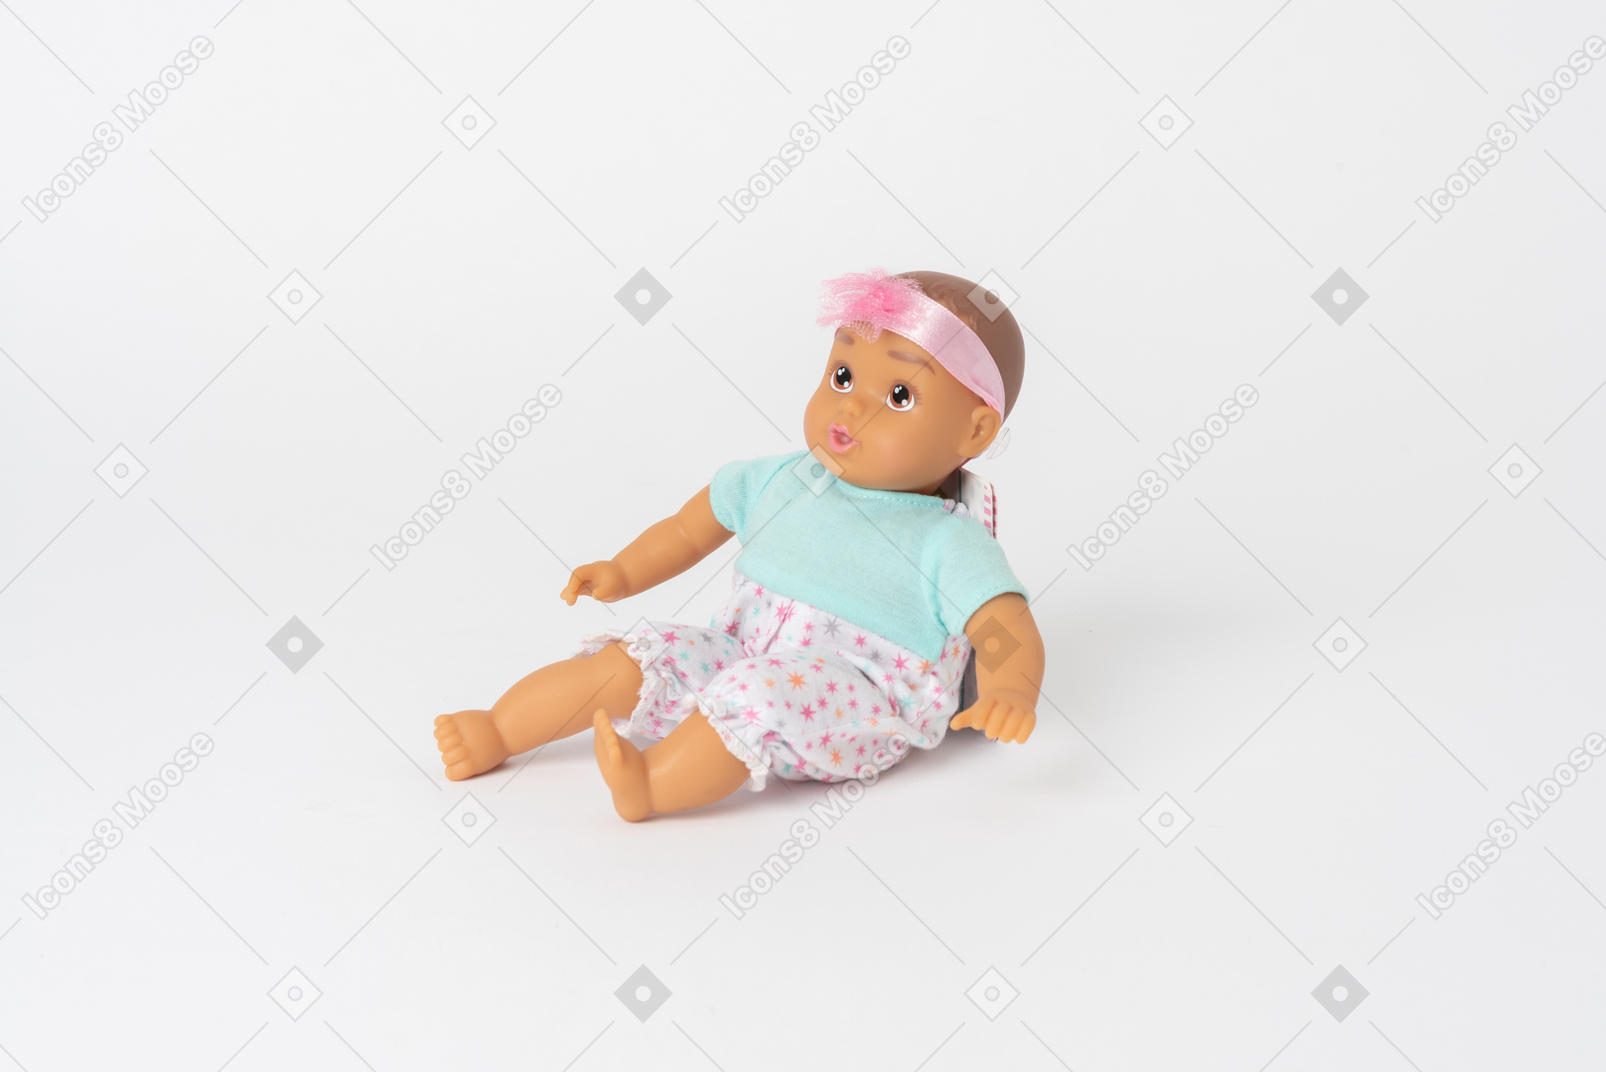 Jolie poupée bébé assis isolé sur un fond blanc uni